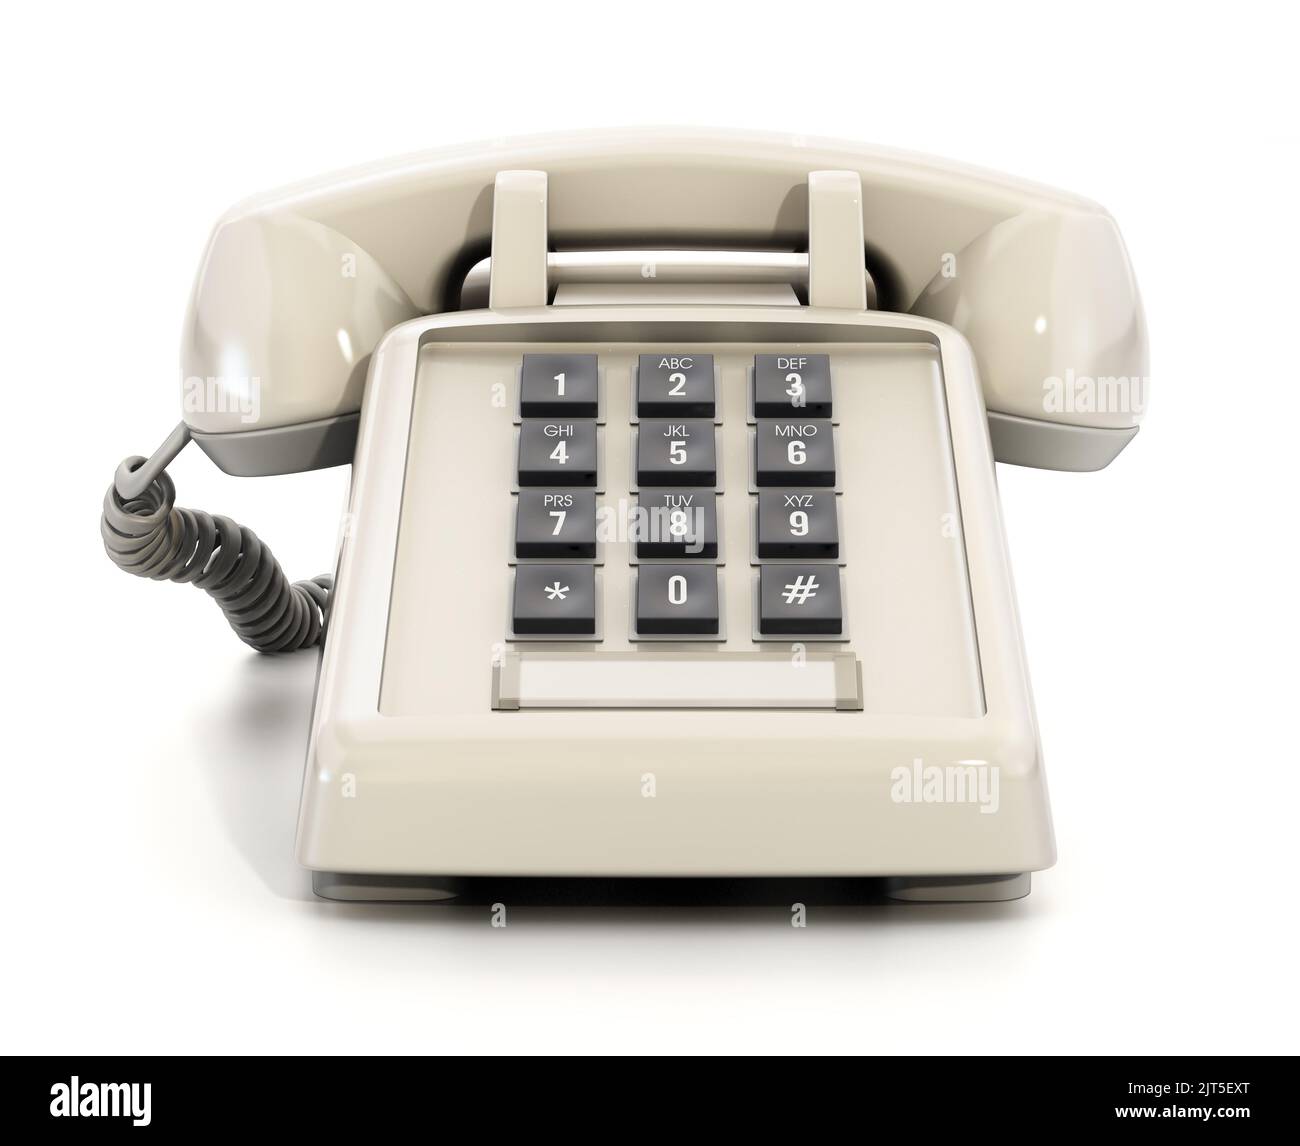 Retro analogue telephone with keys isolated on white background. 3D illustration Stock Photo